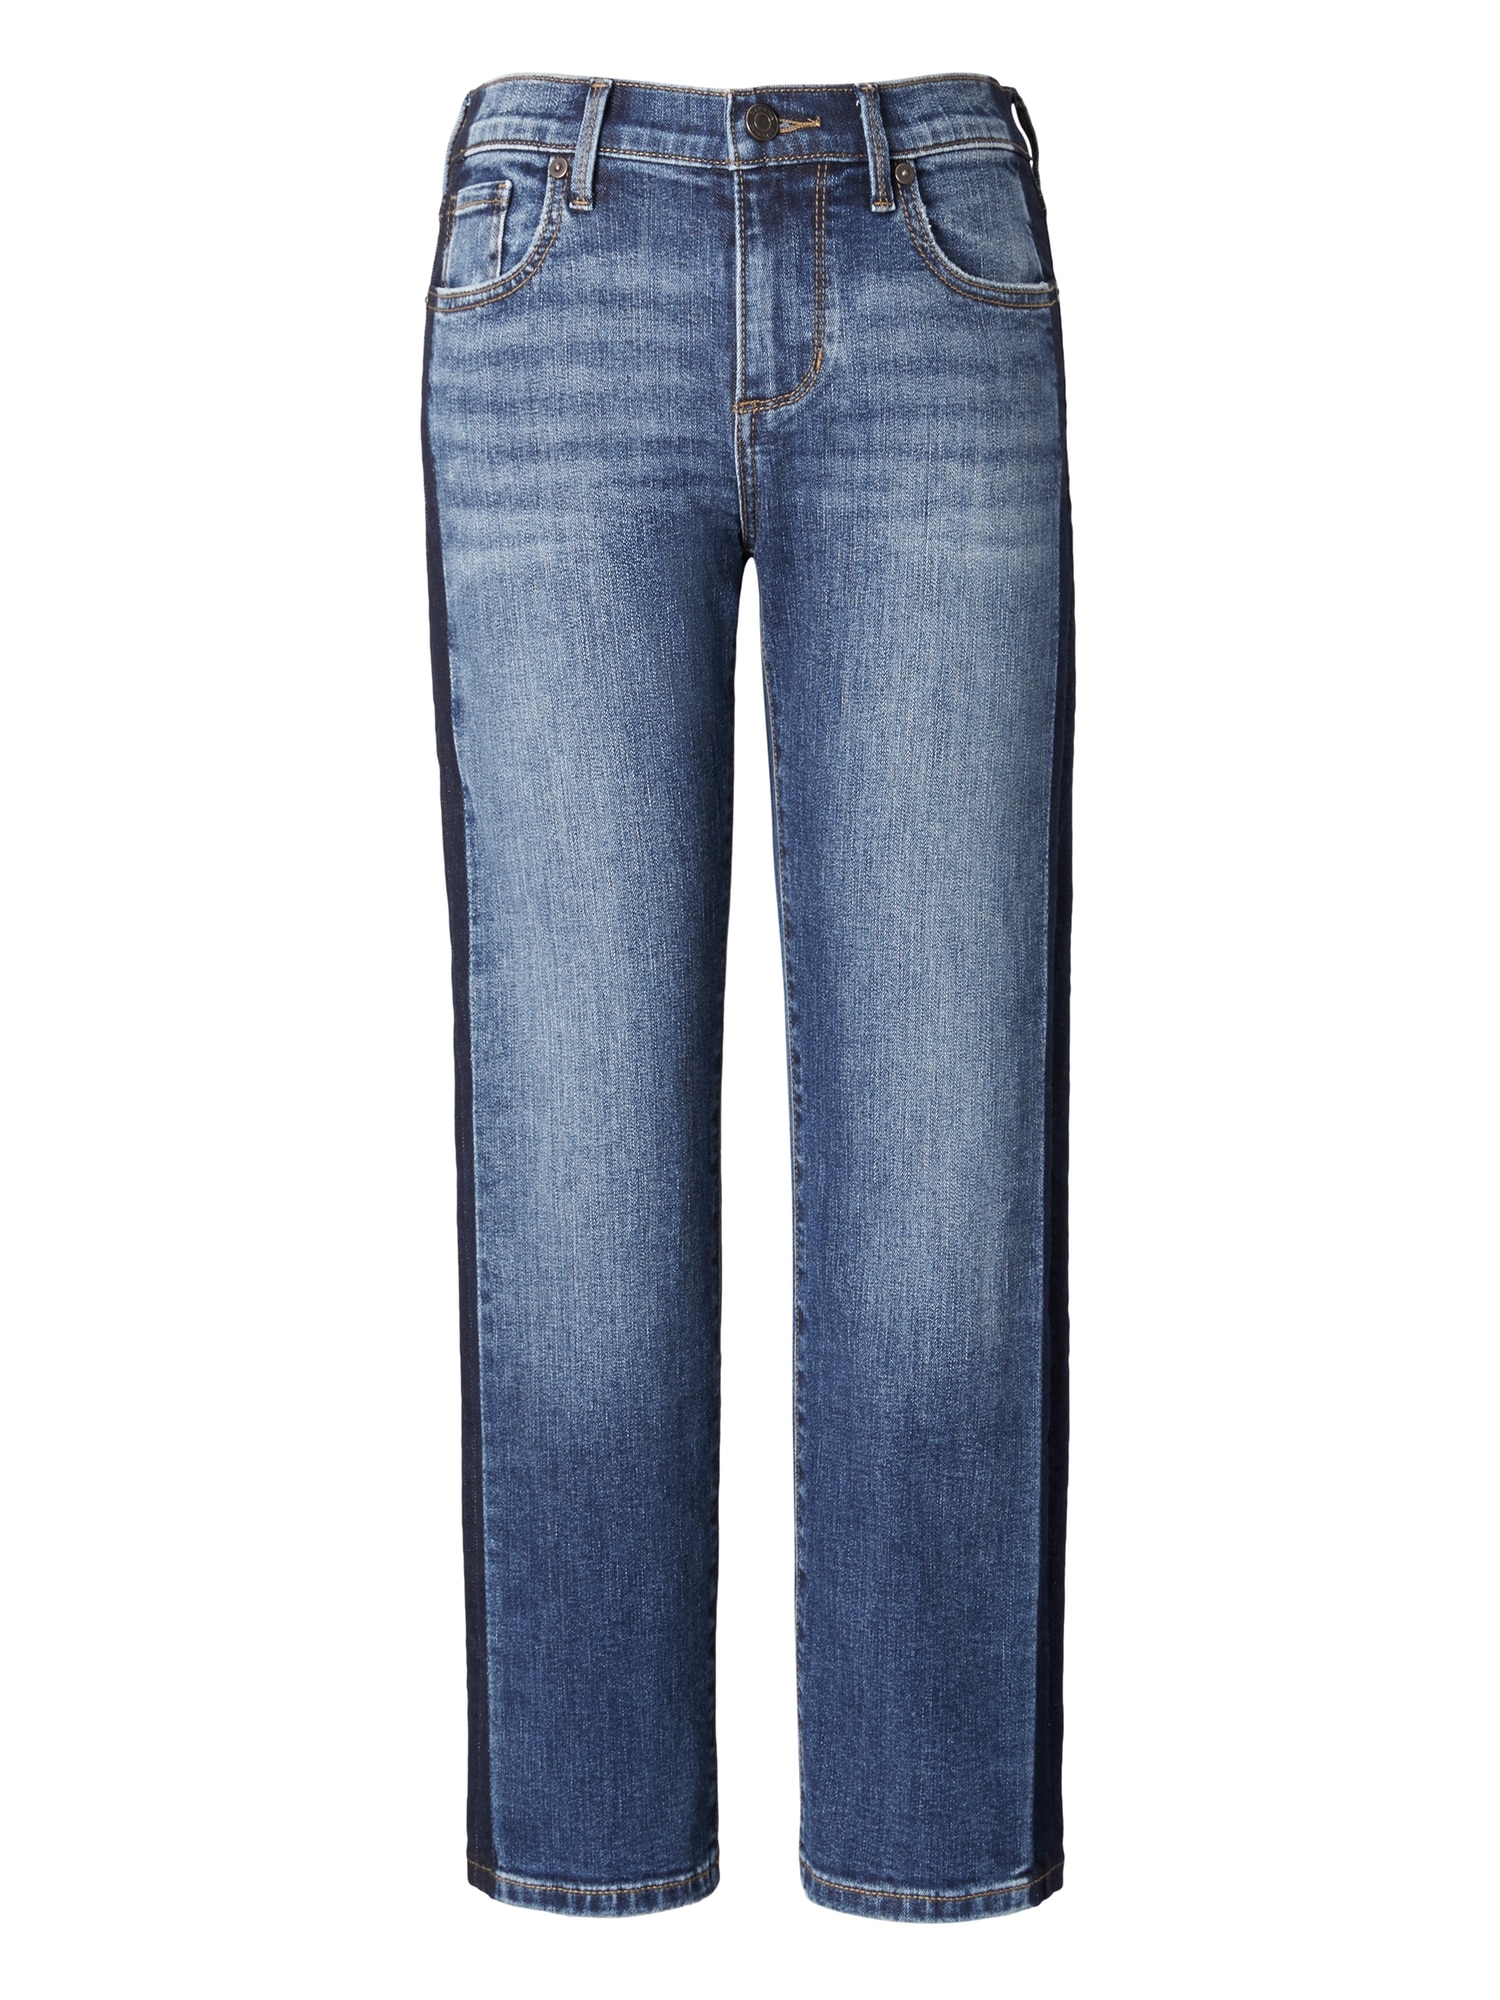 Super High-Rise Skinny Jean